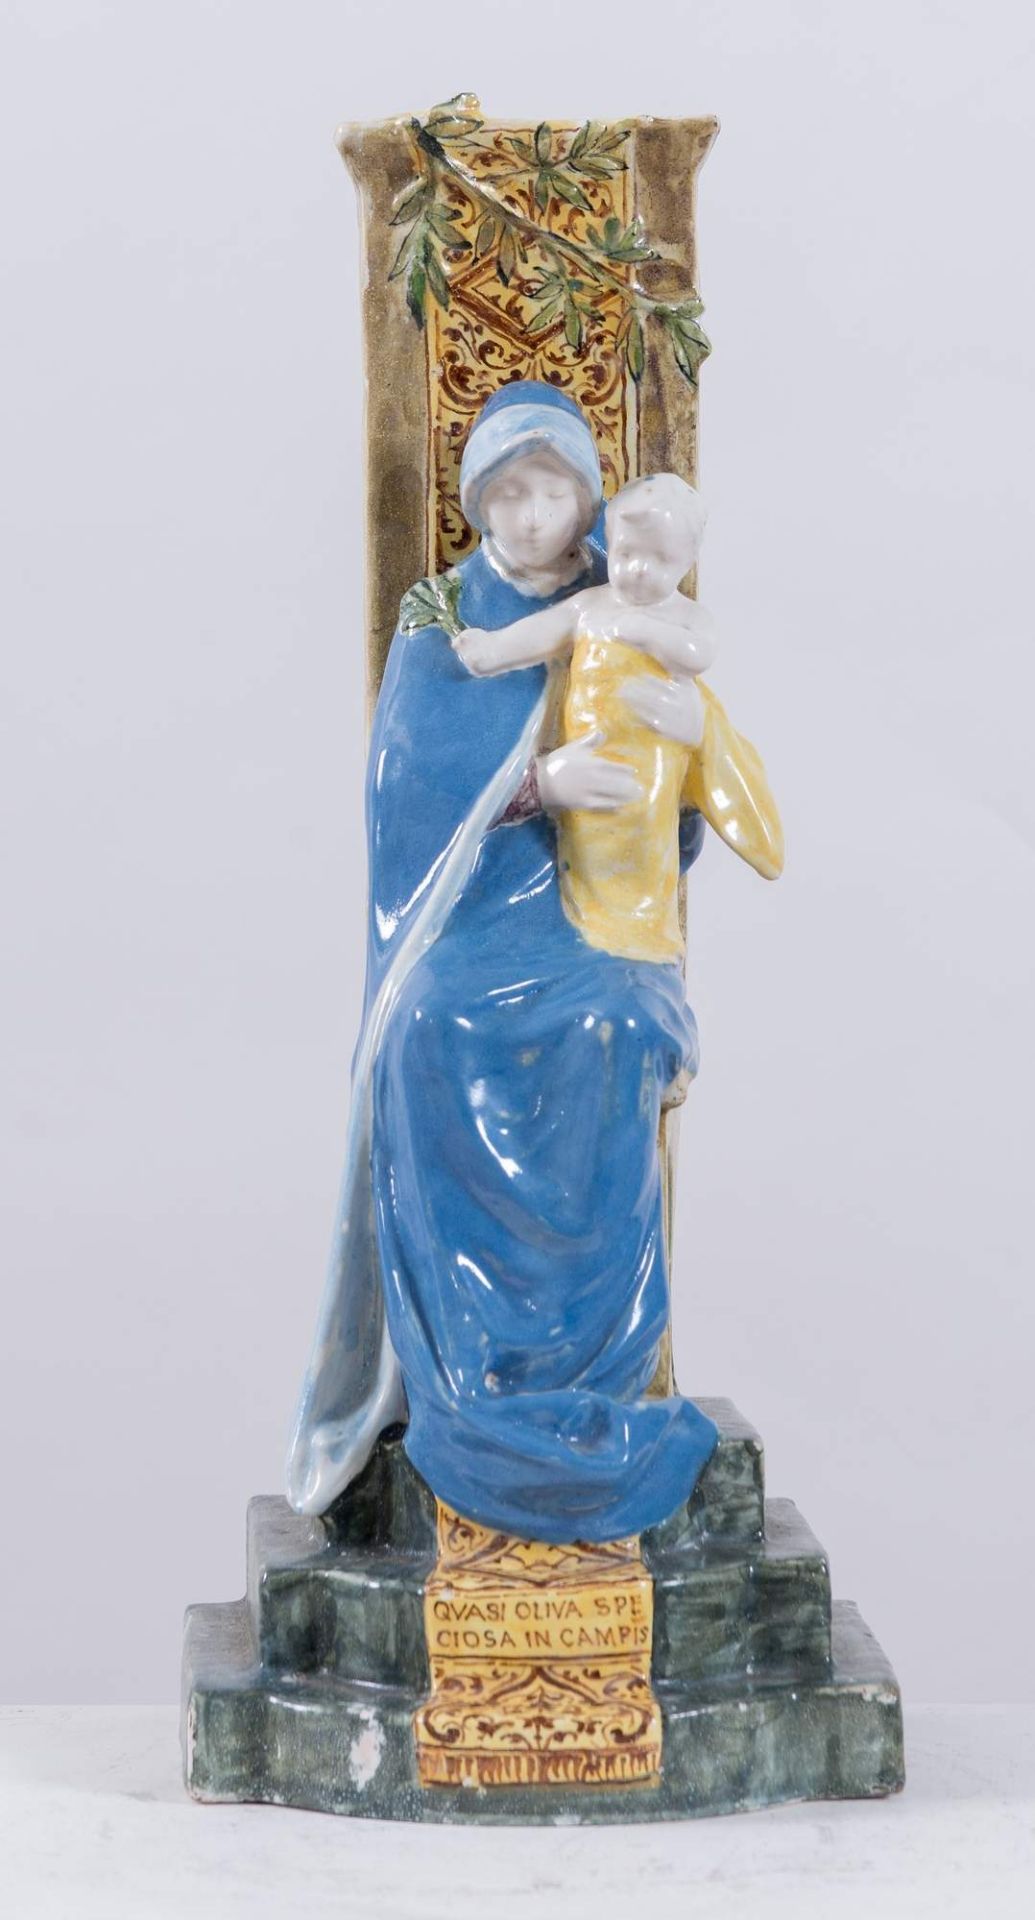 ANGELO MINGHETTI, Bologna, XX secolo. "Madonna in trono", realizzata in ceramica policroma. Cm 39,